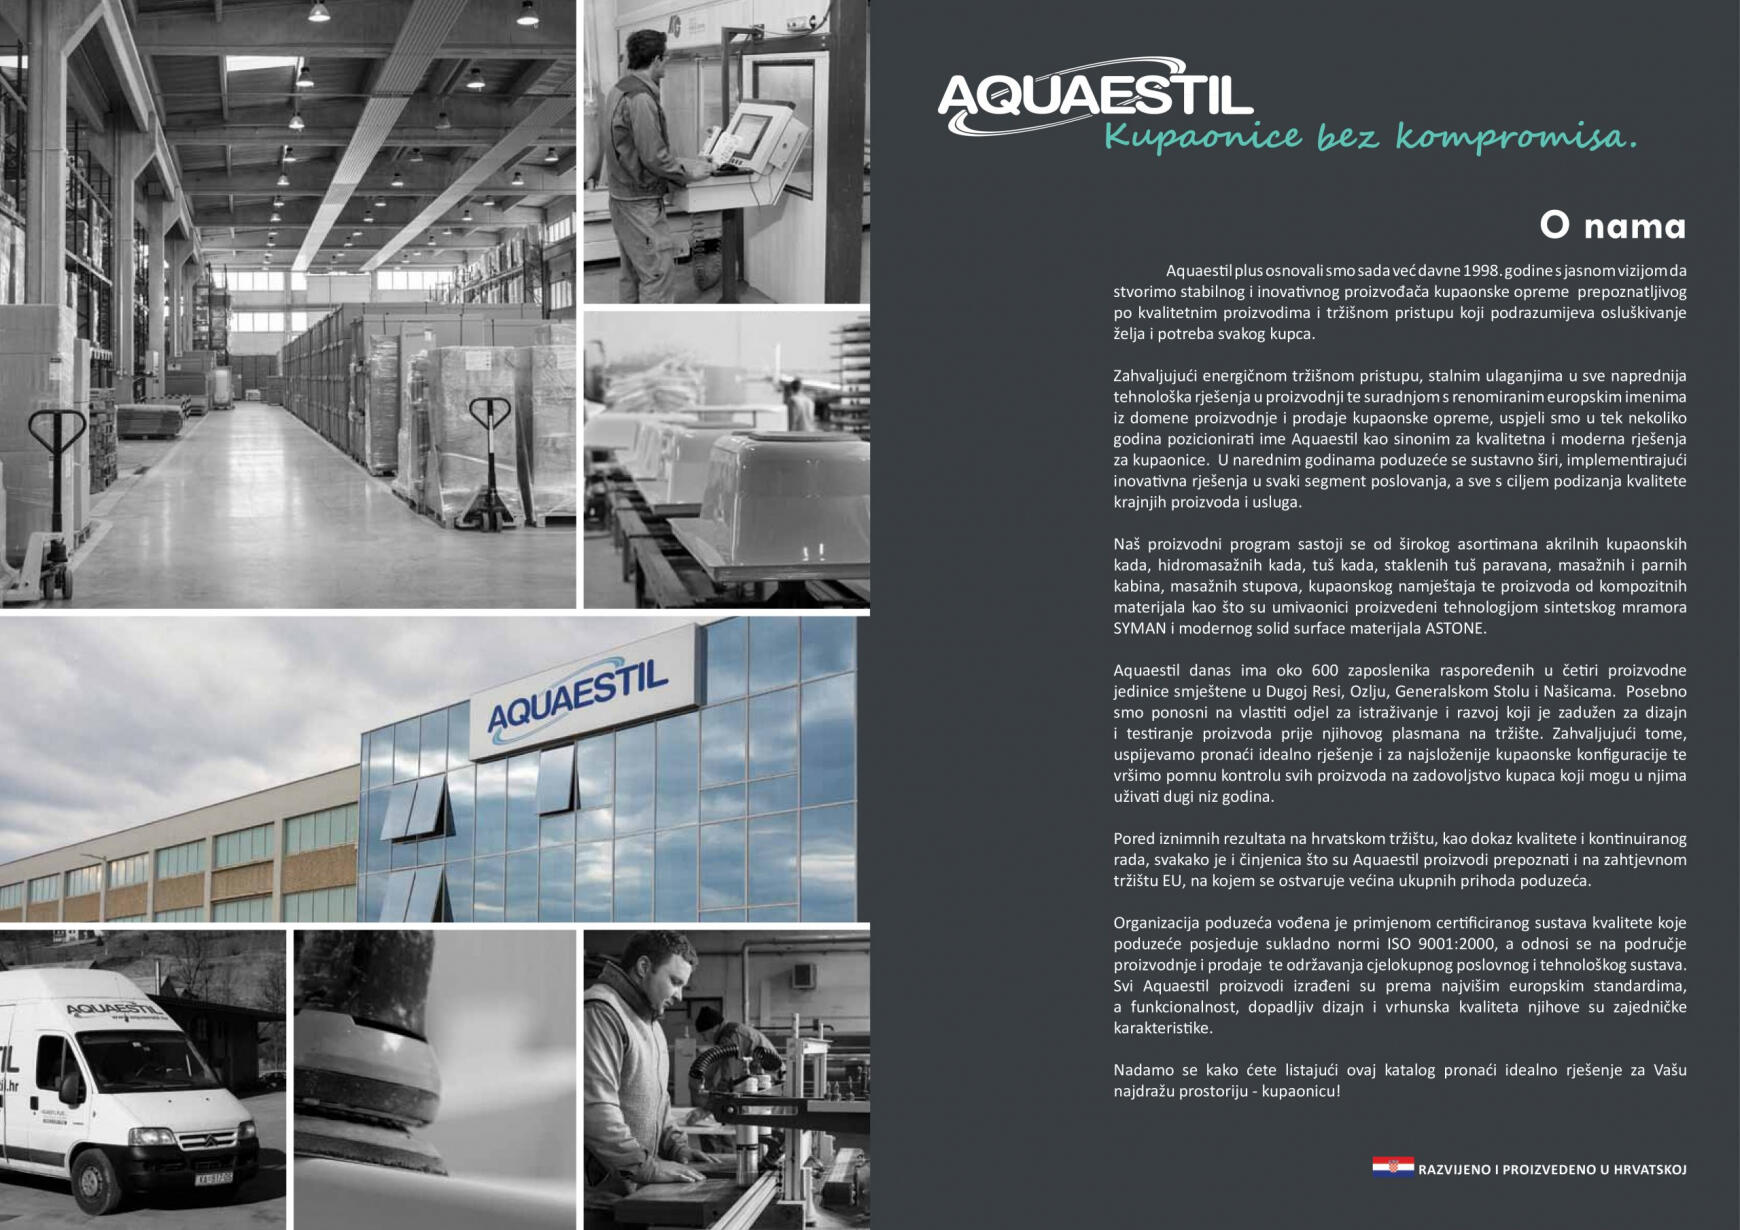 aquaestil - Aquaestil katalog od srijede 22.02. - page: 3